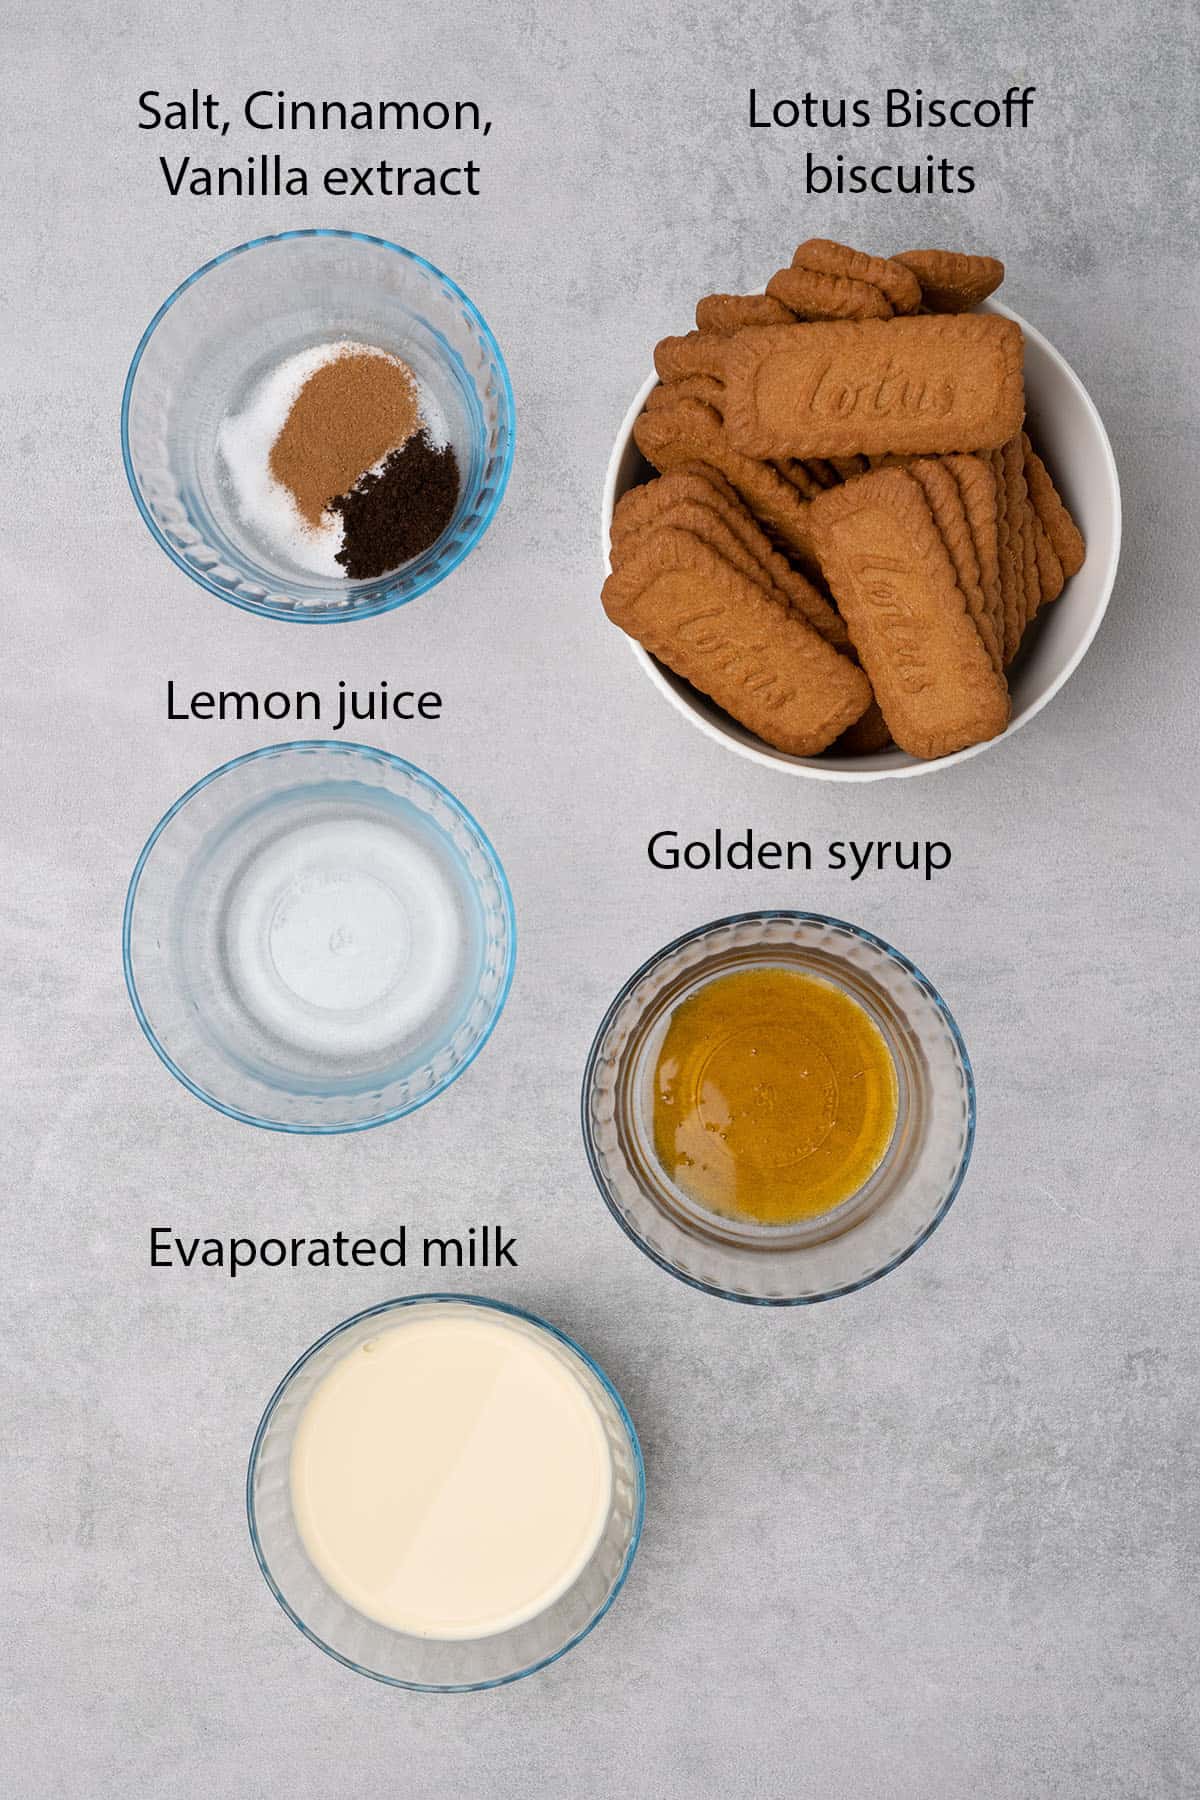 Lotus Biscoff spread ingredients.